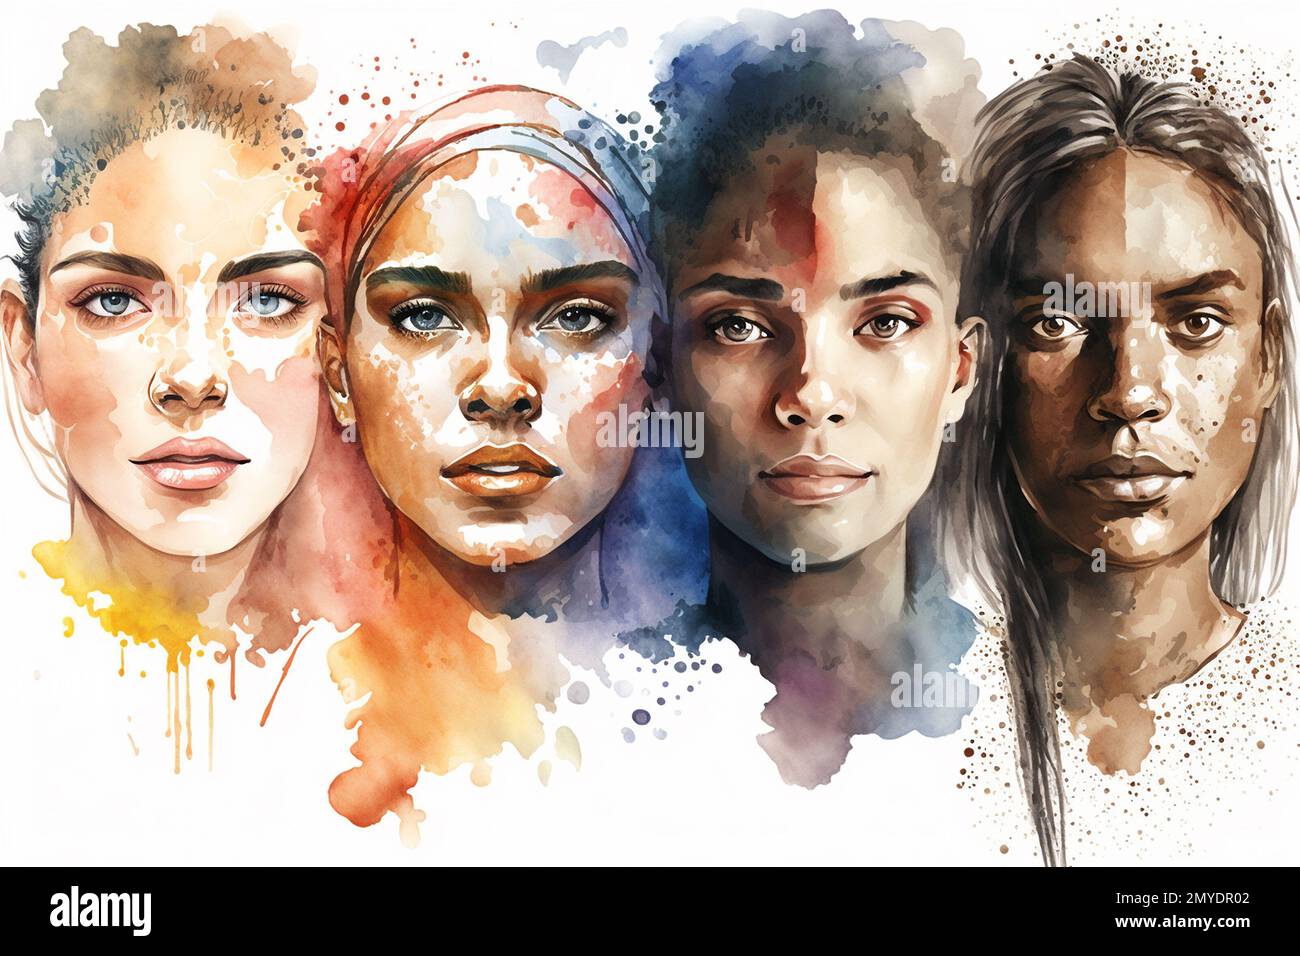 Aquarell-Design-Porträt verschiedener Ethnien menschlicher Gesichter. Bannerdesign. Stockfoto